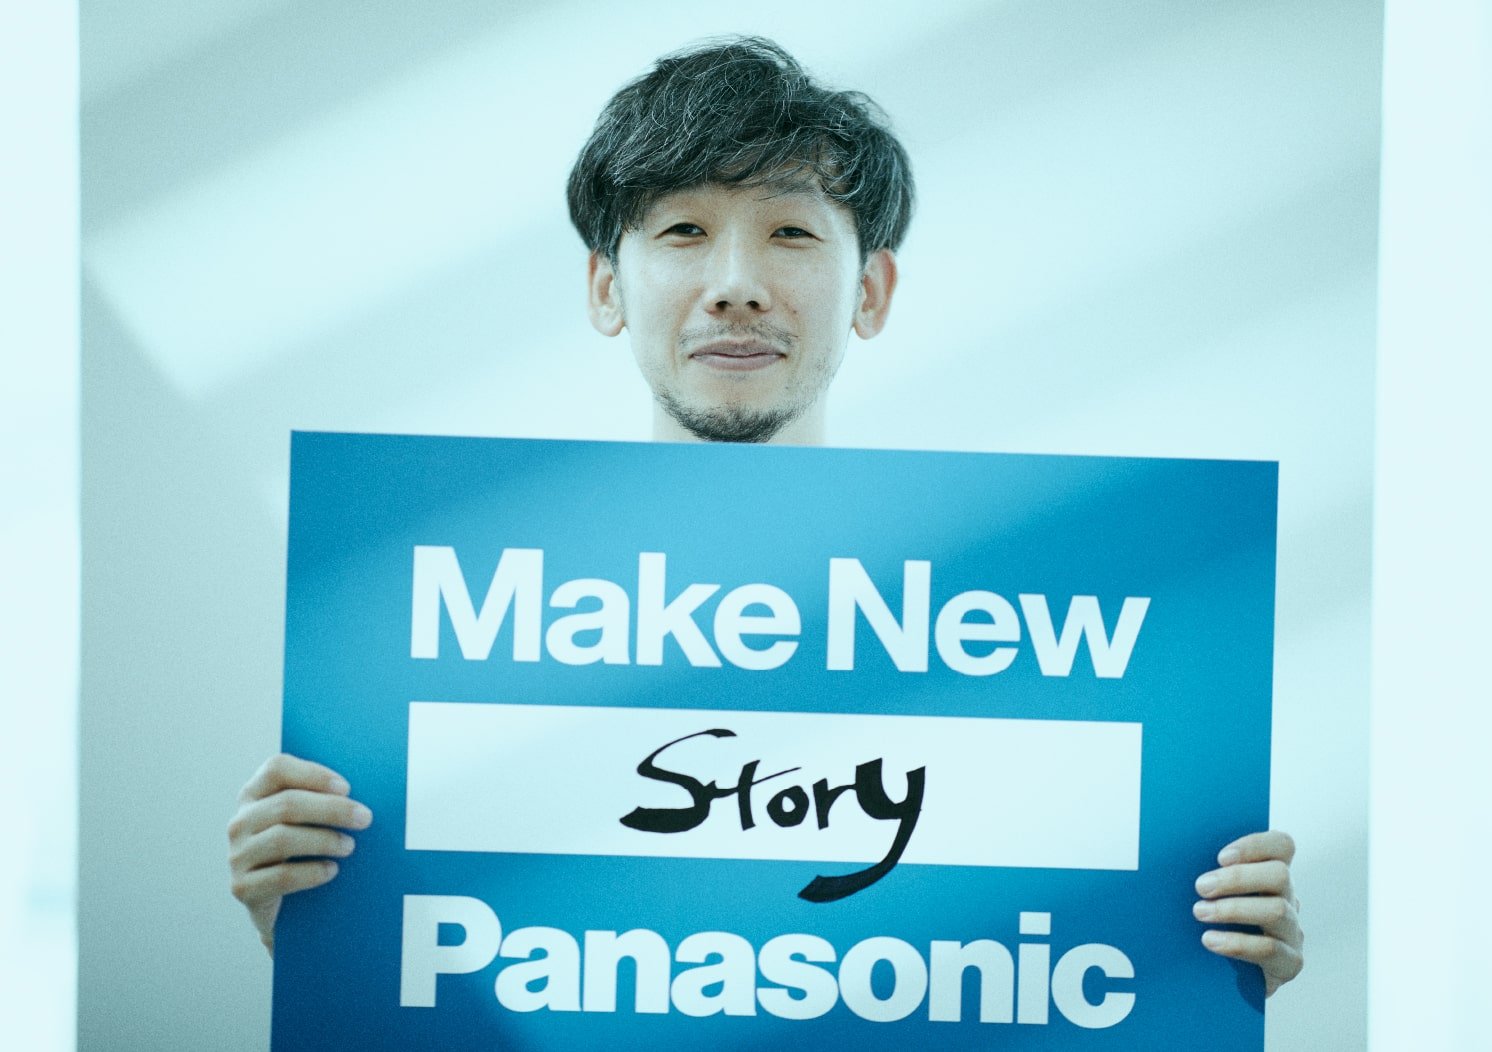 柳沢「Make New Story」 | Make New Magazine「未来の定番」をつくるために、パナソニックのリアルな姿を伝えるメディア